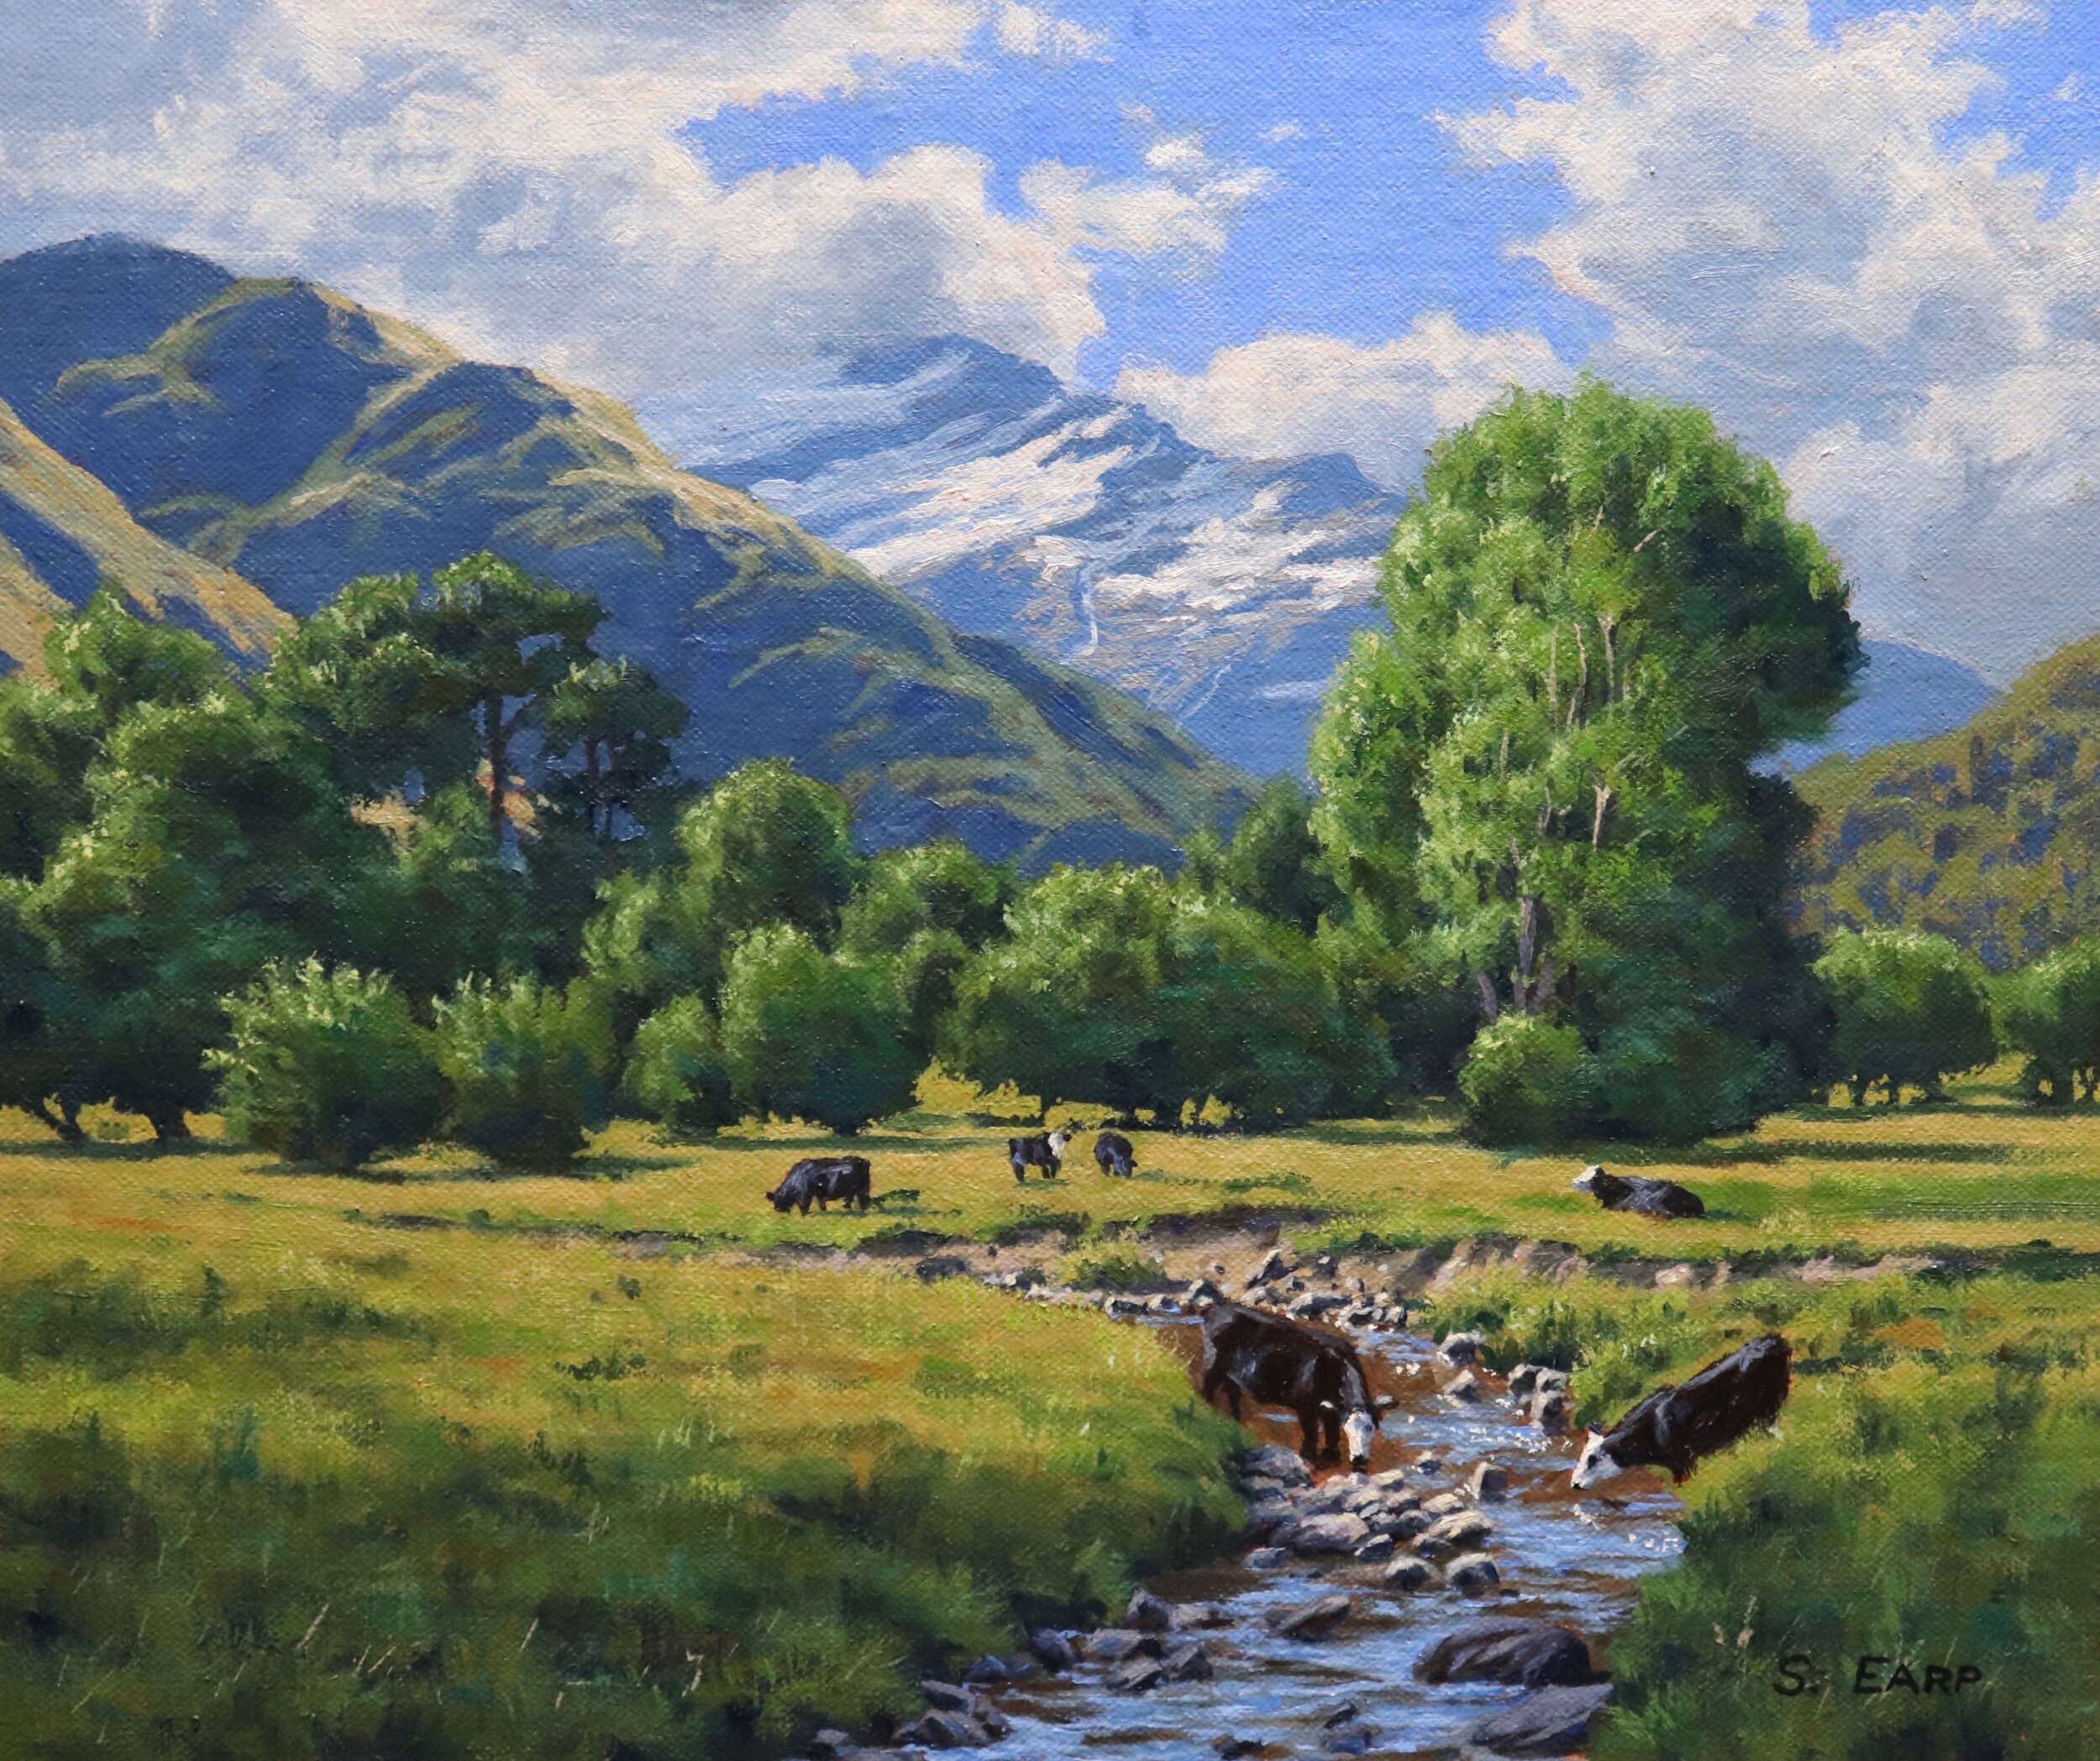 Matukituki Valley - Samuel Earp - oil painting.jpeg